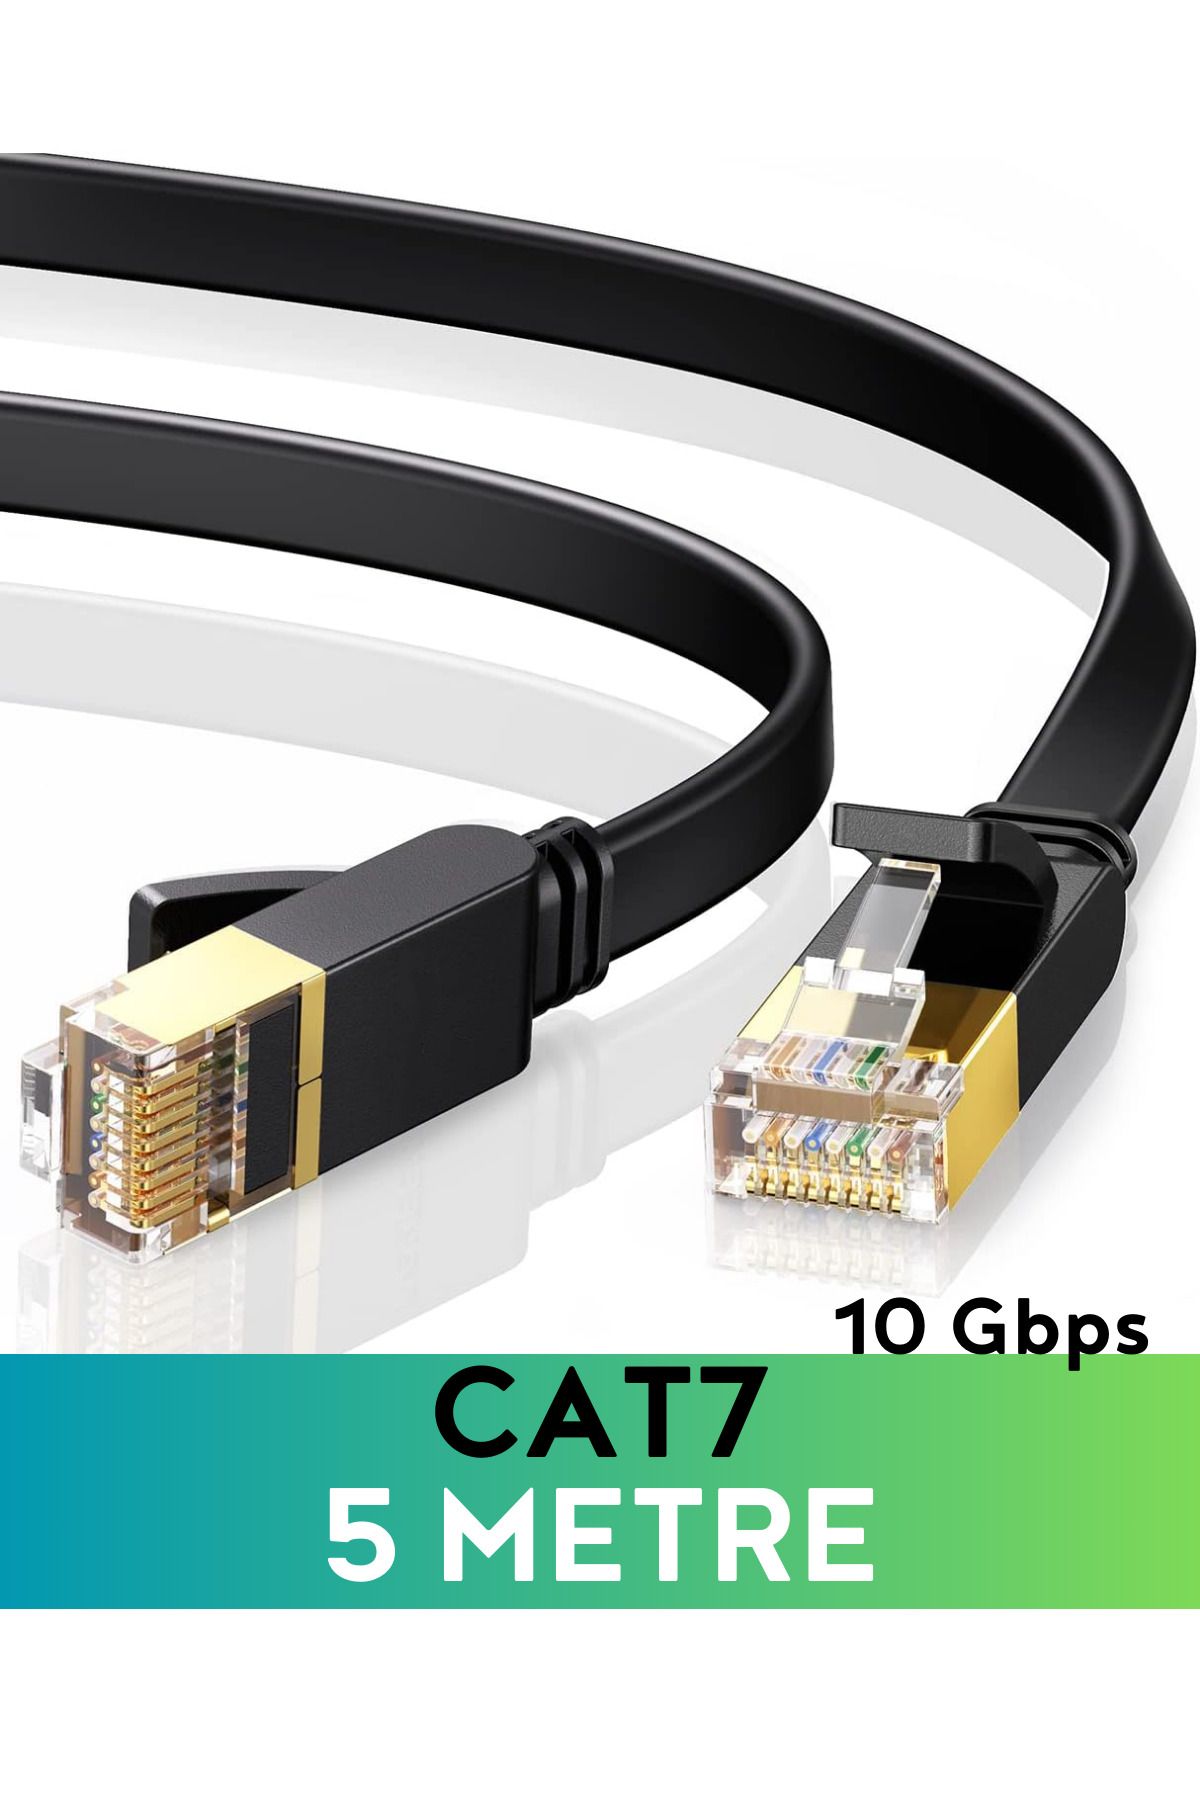 Vetech CAT7 5 Metre Ethernet Kablosu 10Gbps Premium İnternet Lan Kablo 5mt